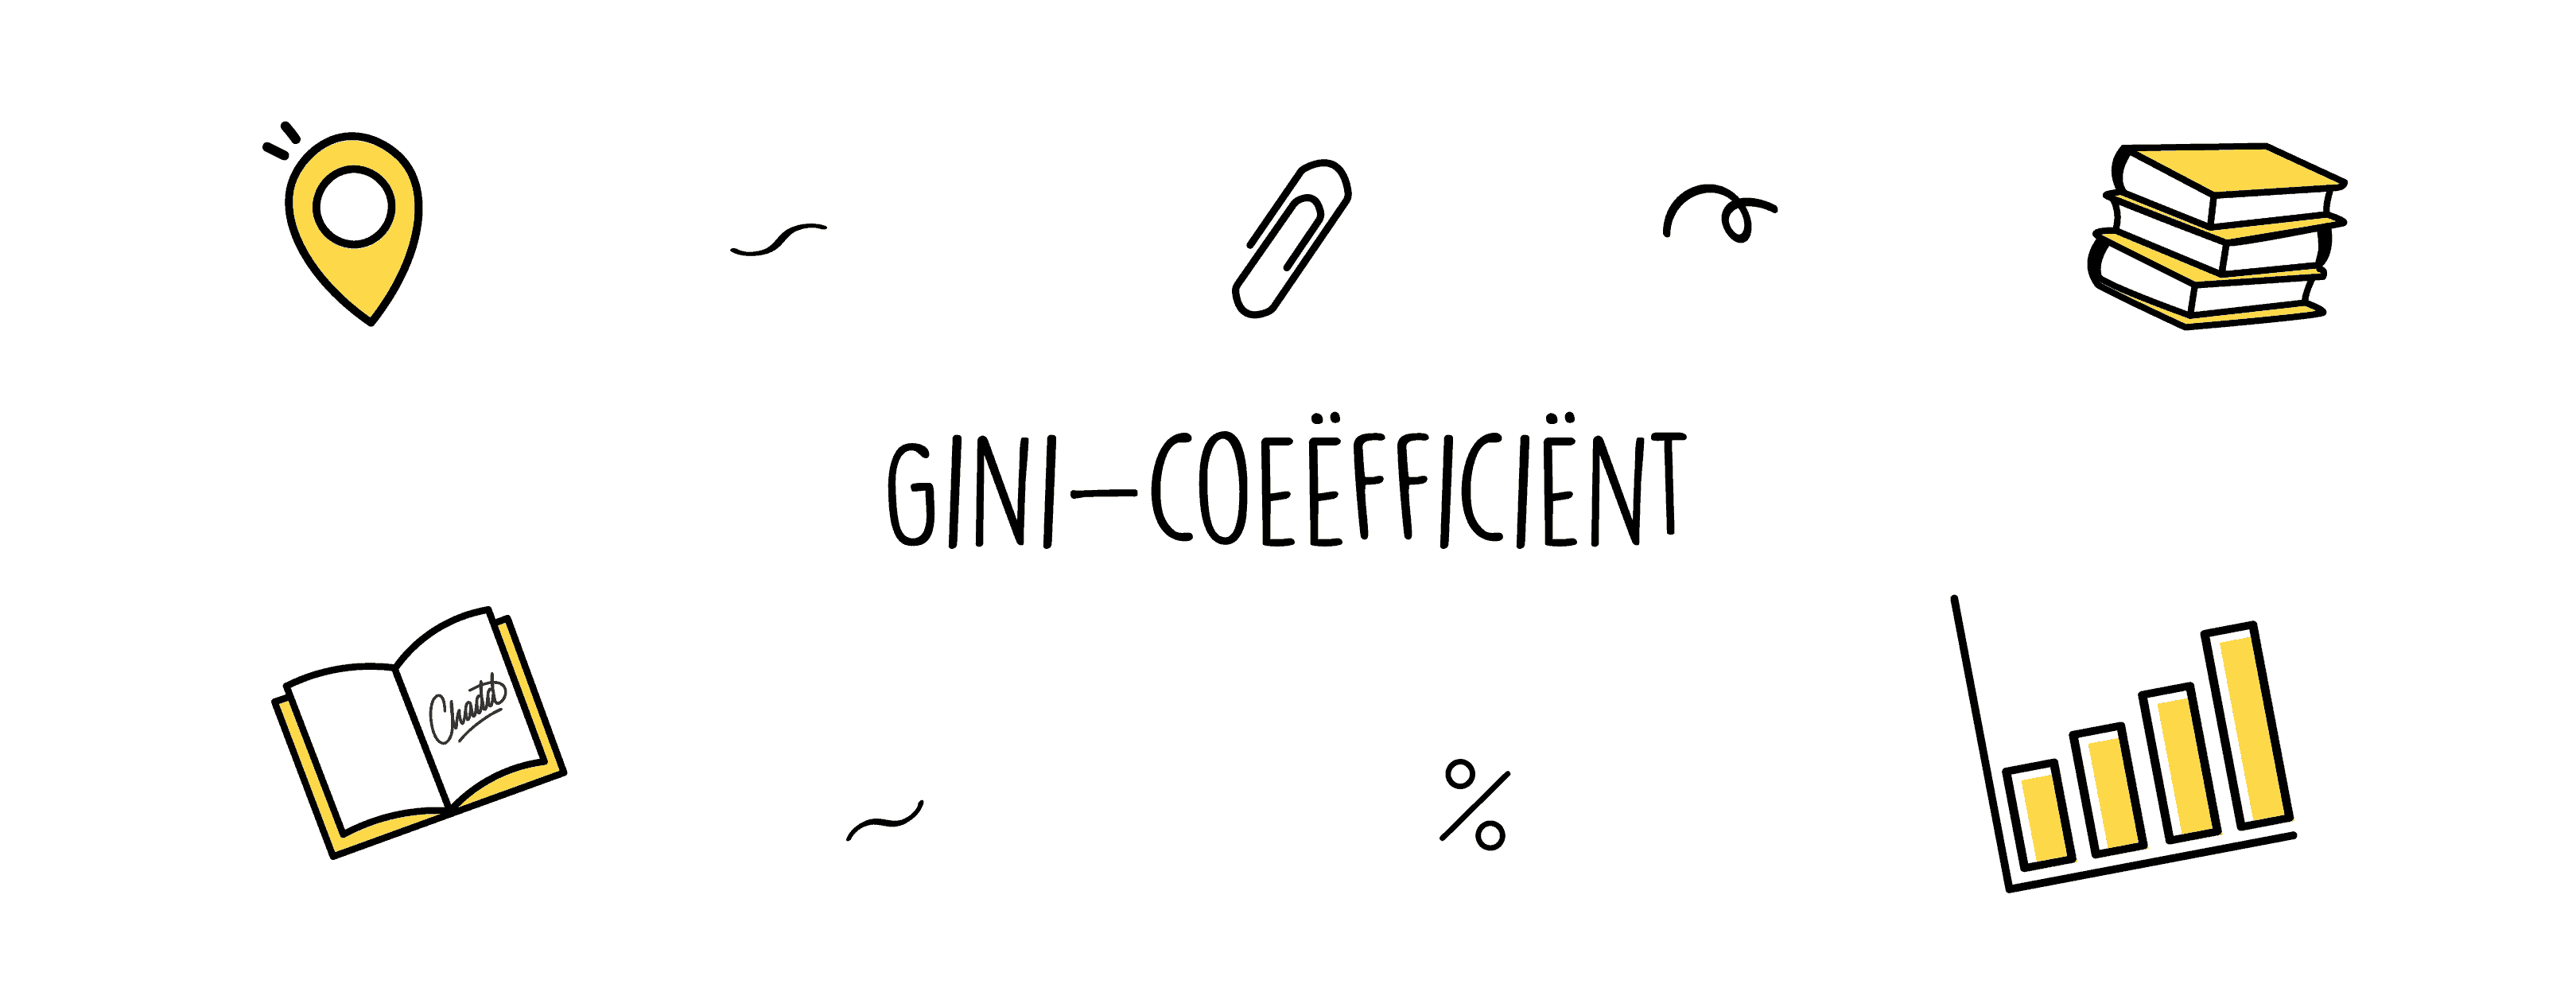 gini coefficient